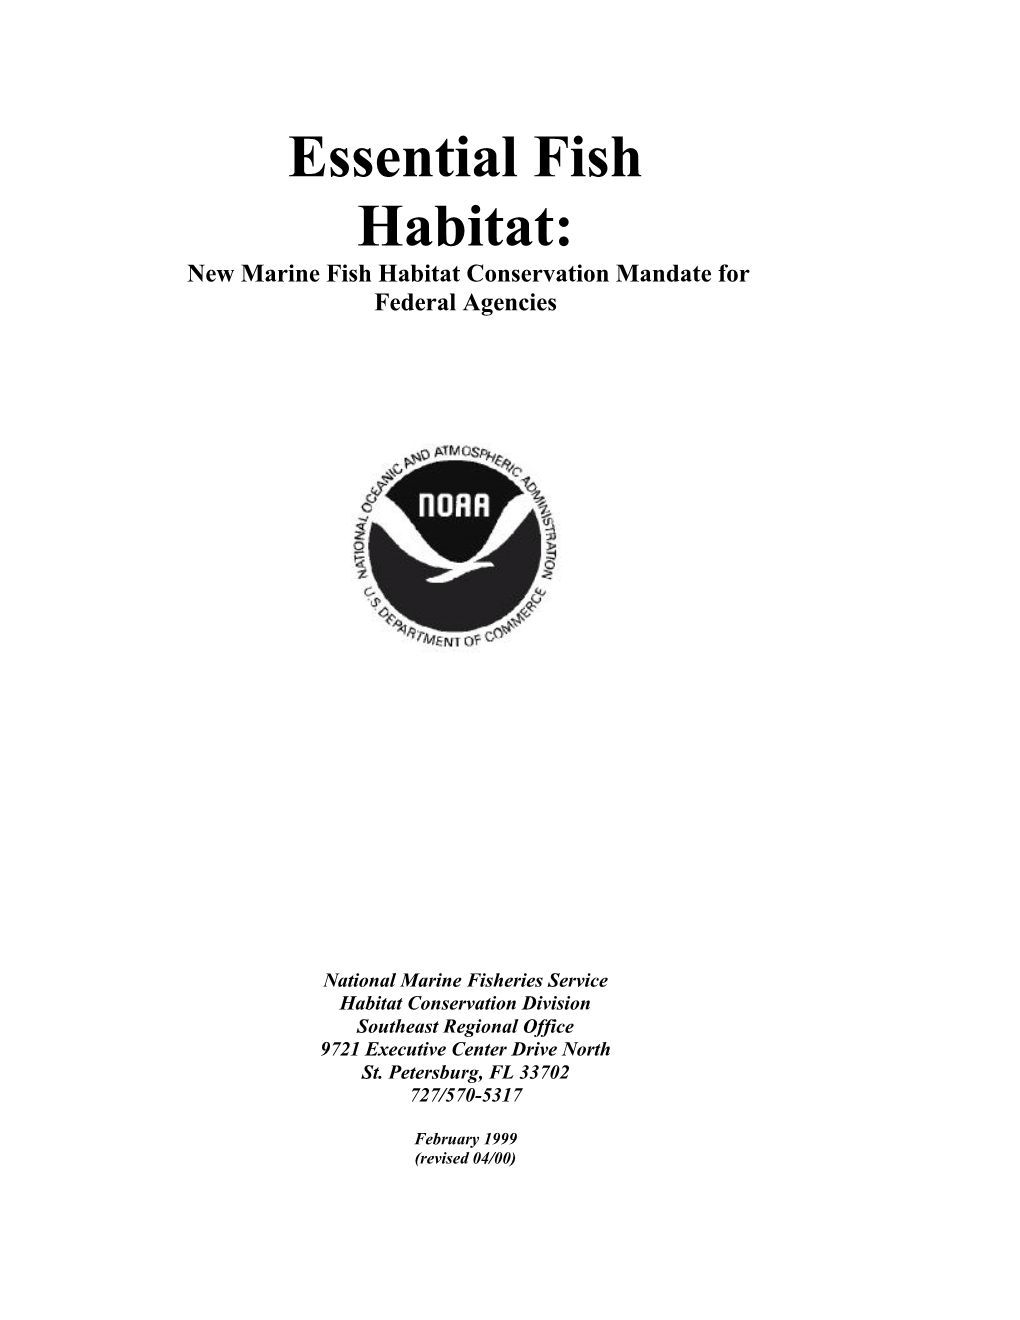 Essential Fish Habitat: New Marine Fish Habitat Conservation Mandate for Federal Agencies